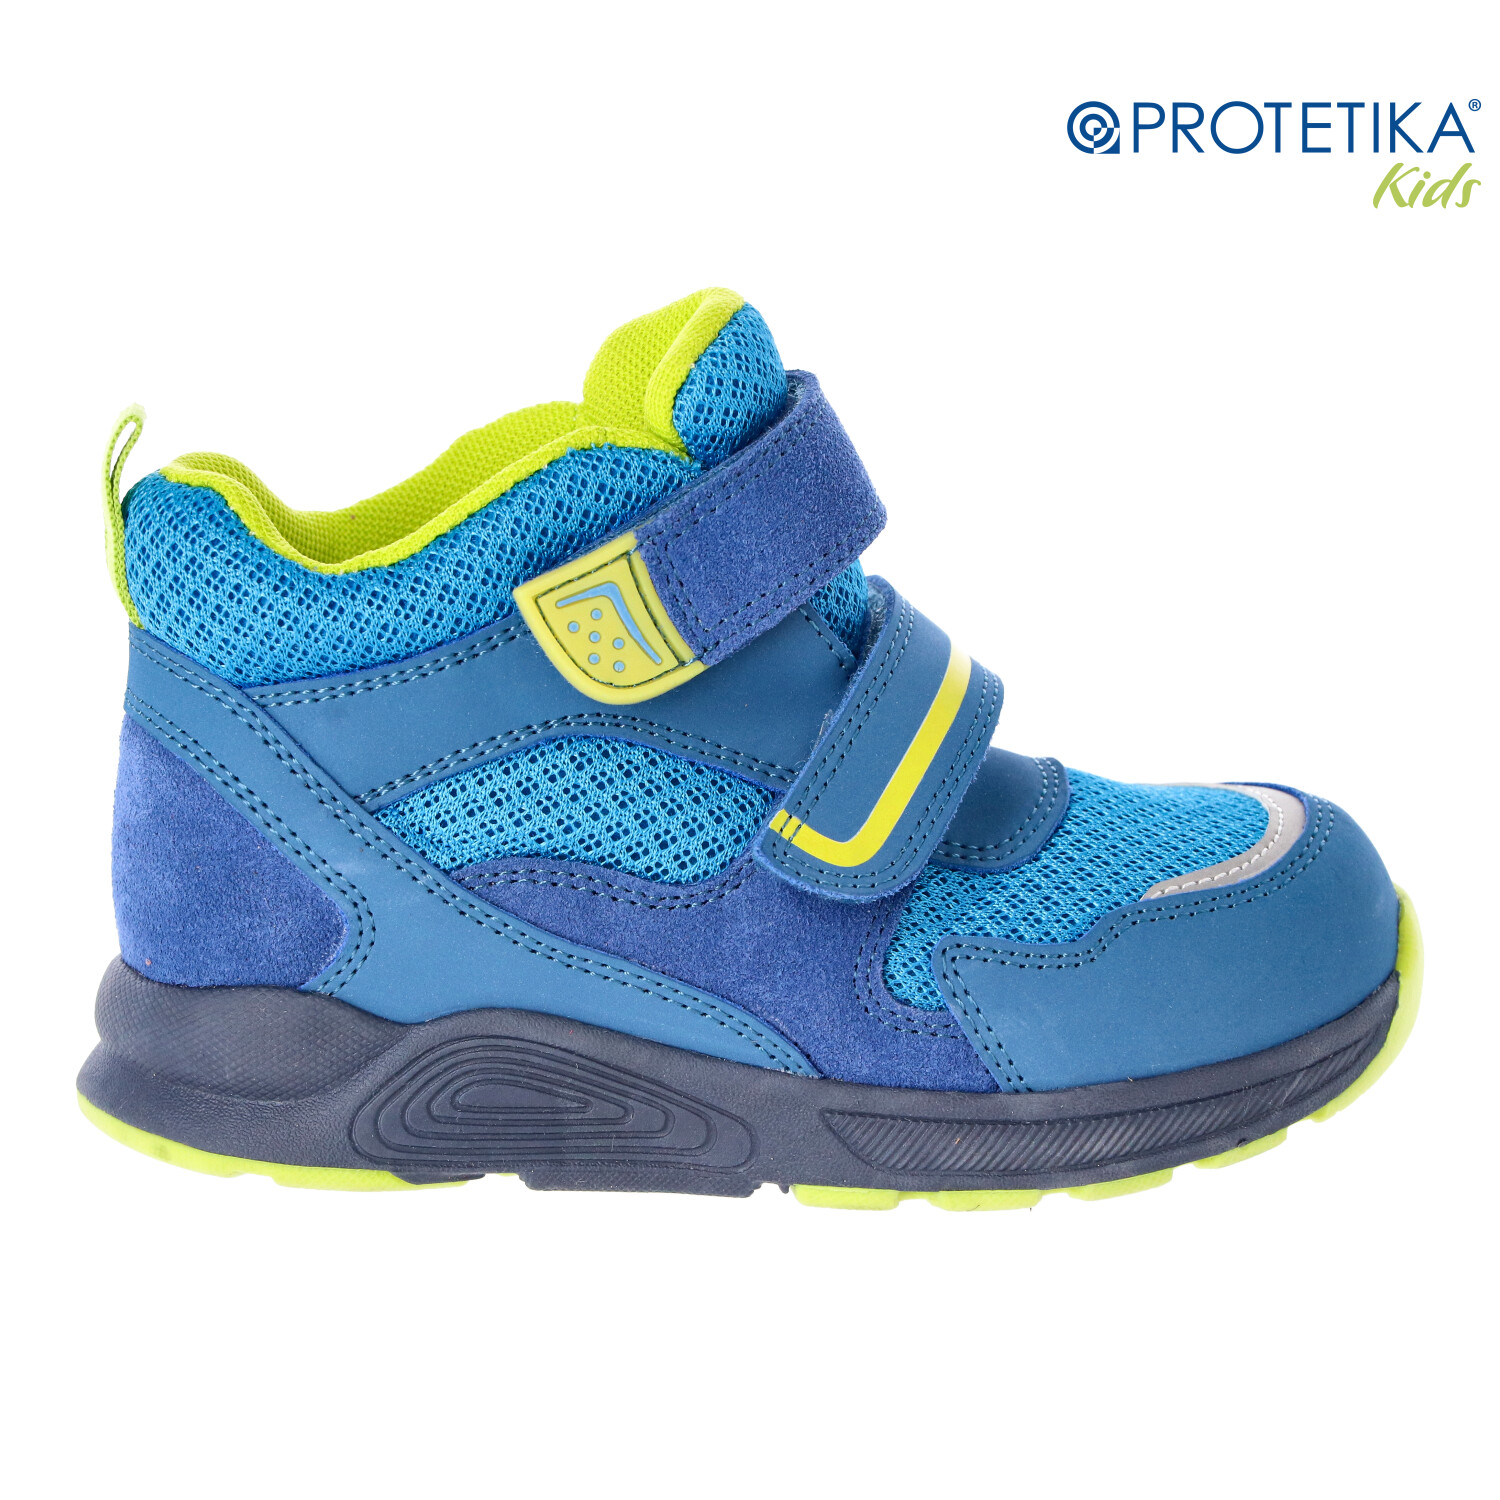 Protetika - topánky s membránou PRO-tex GIZMO blue